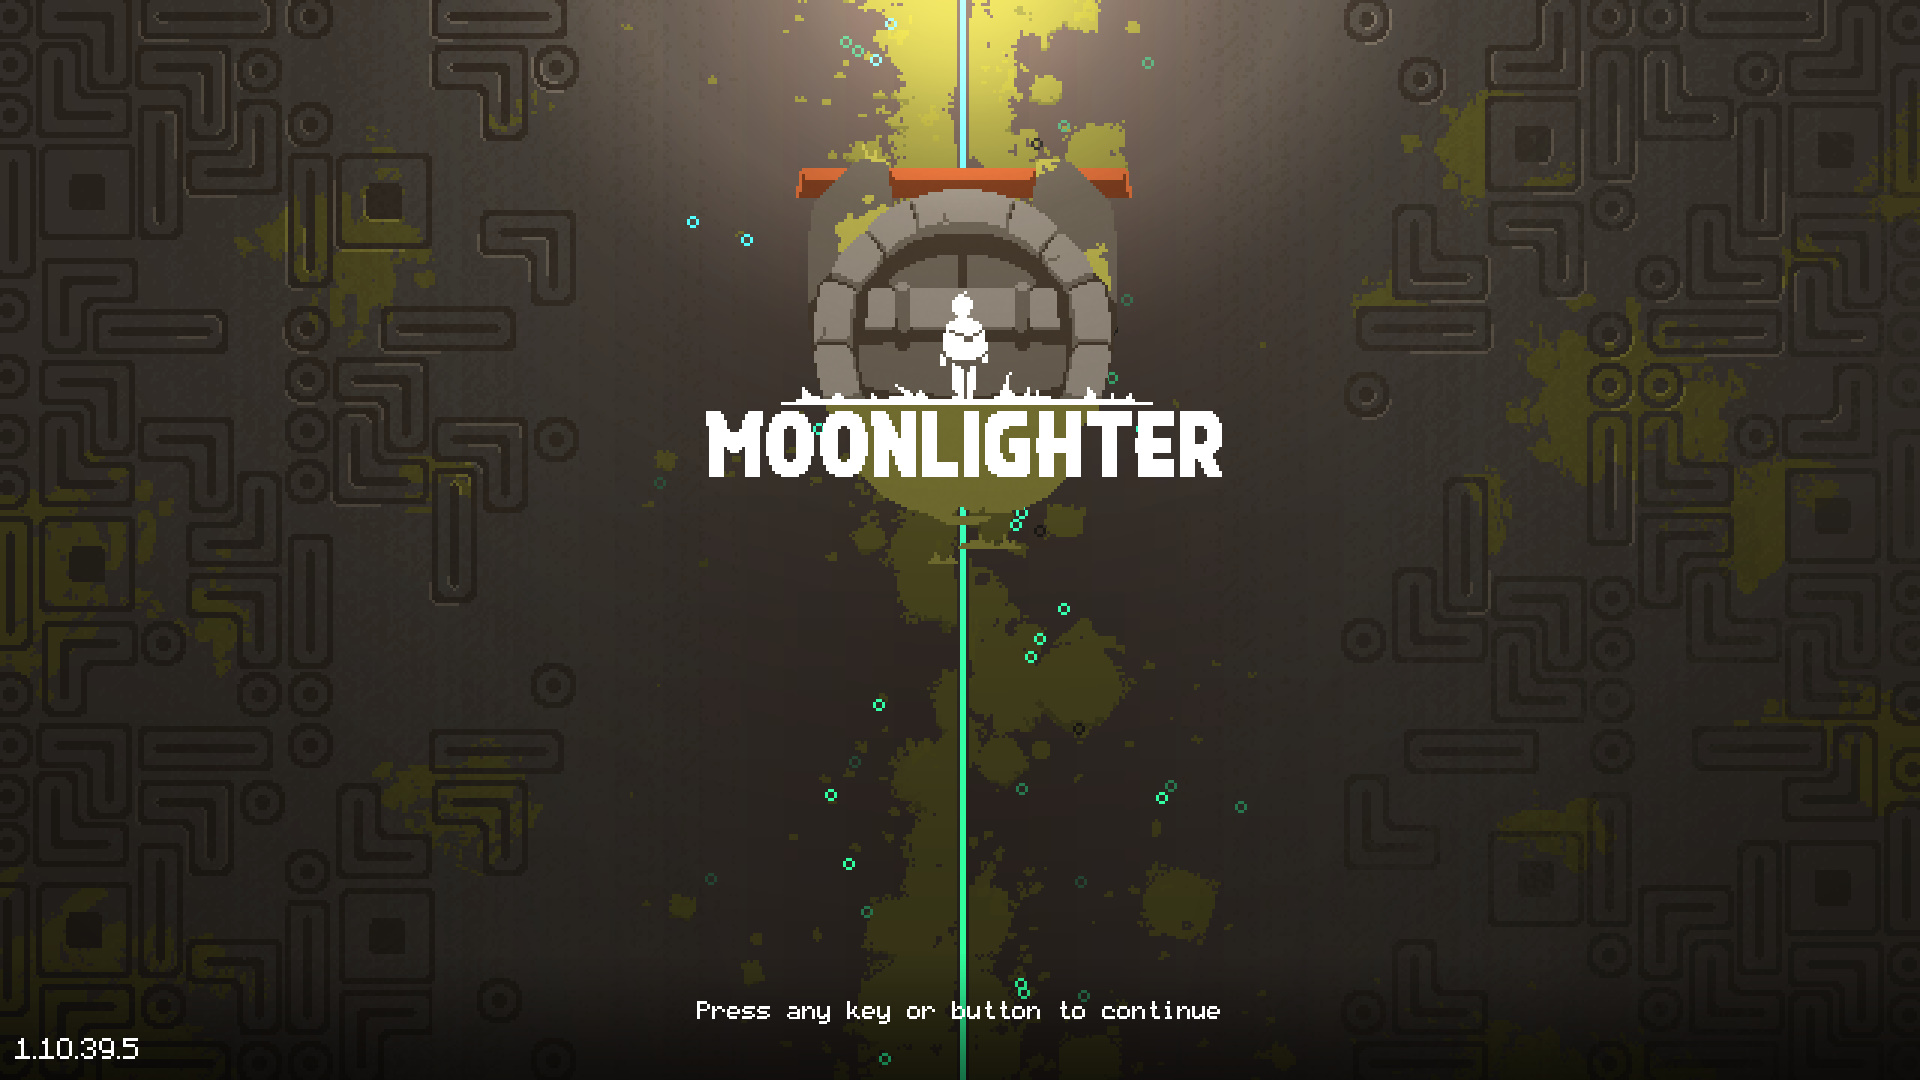 instal the last version for mac Moonlighter